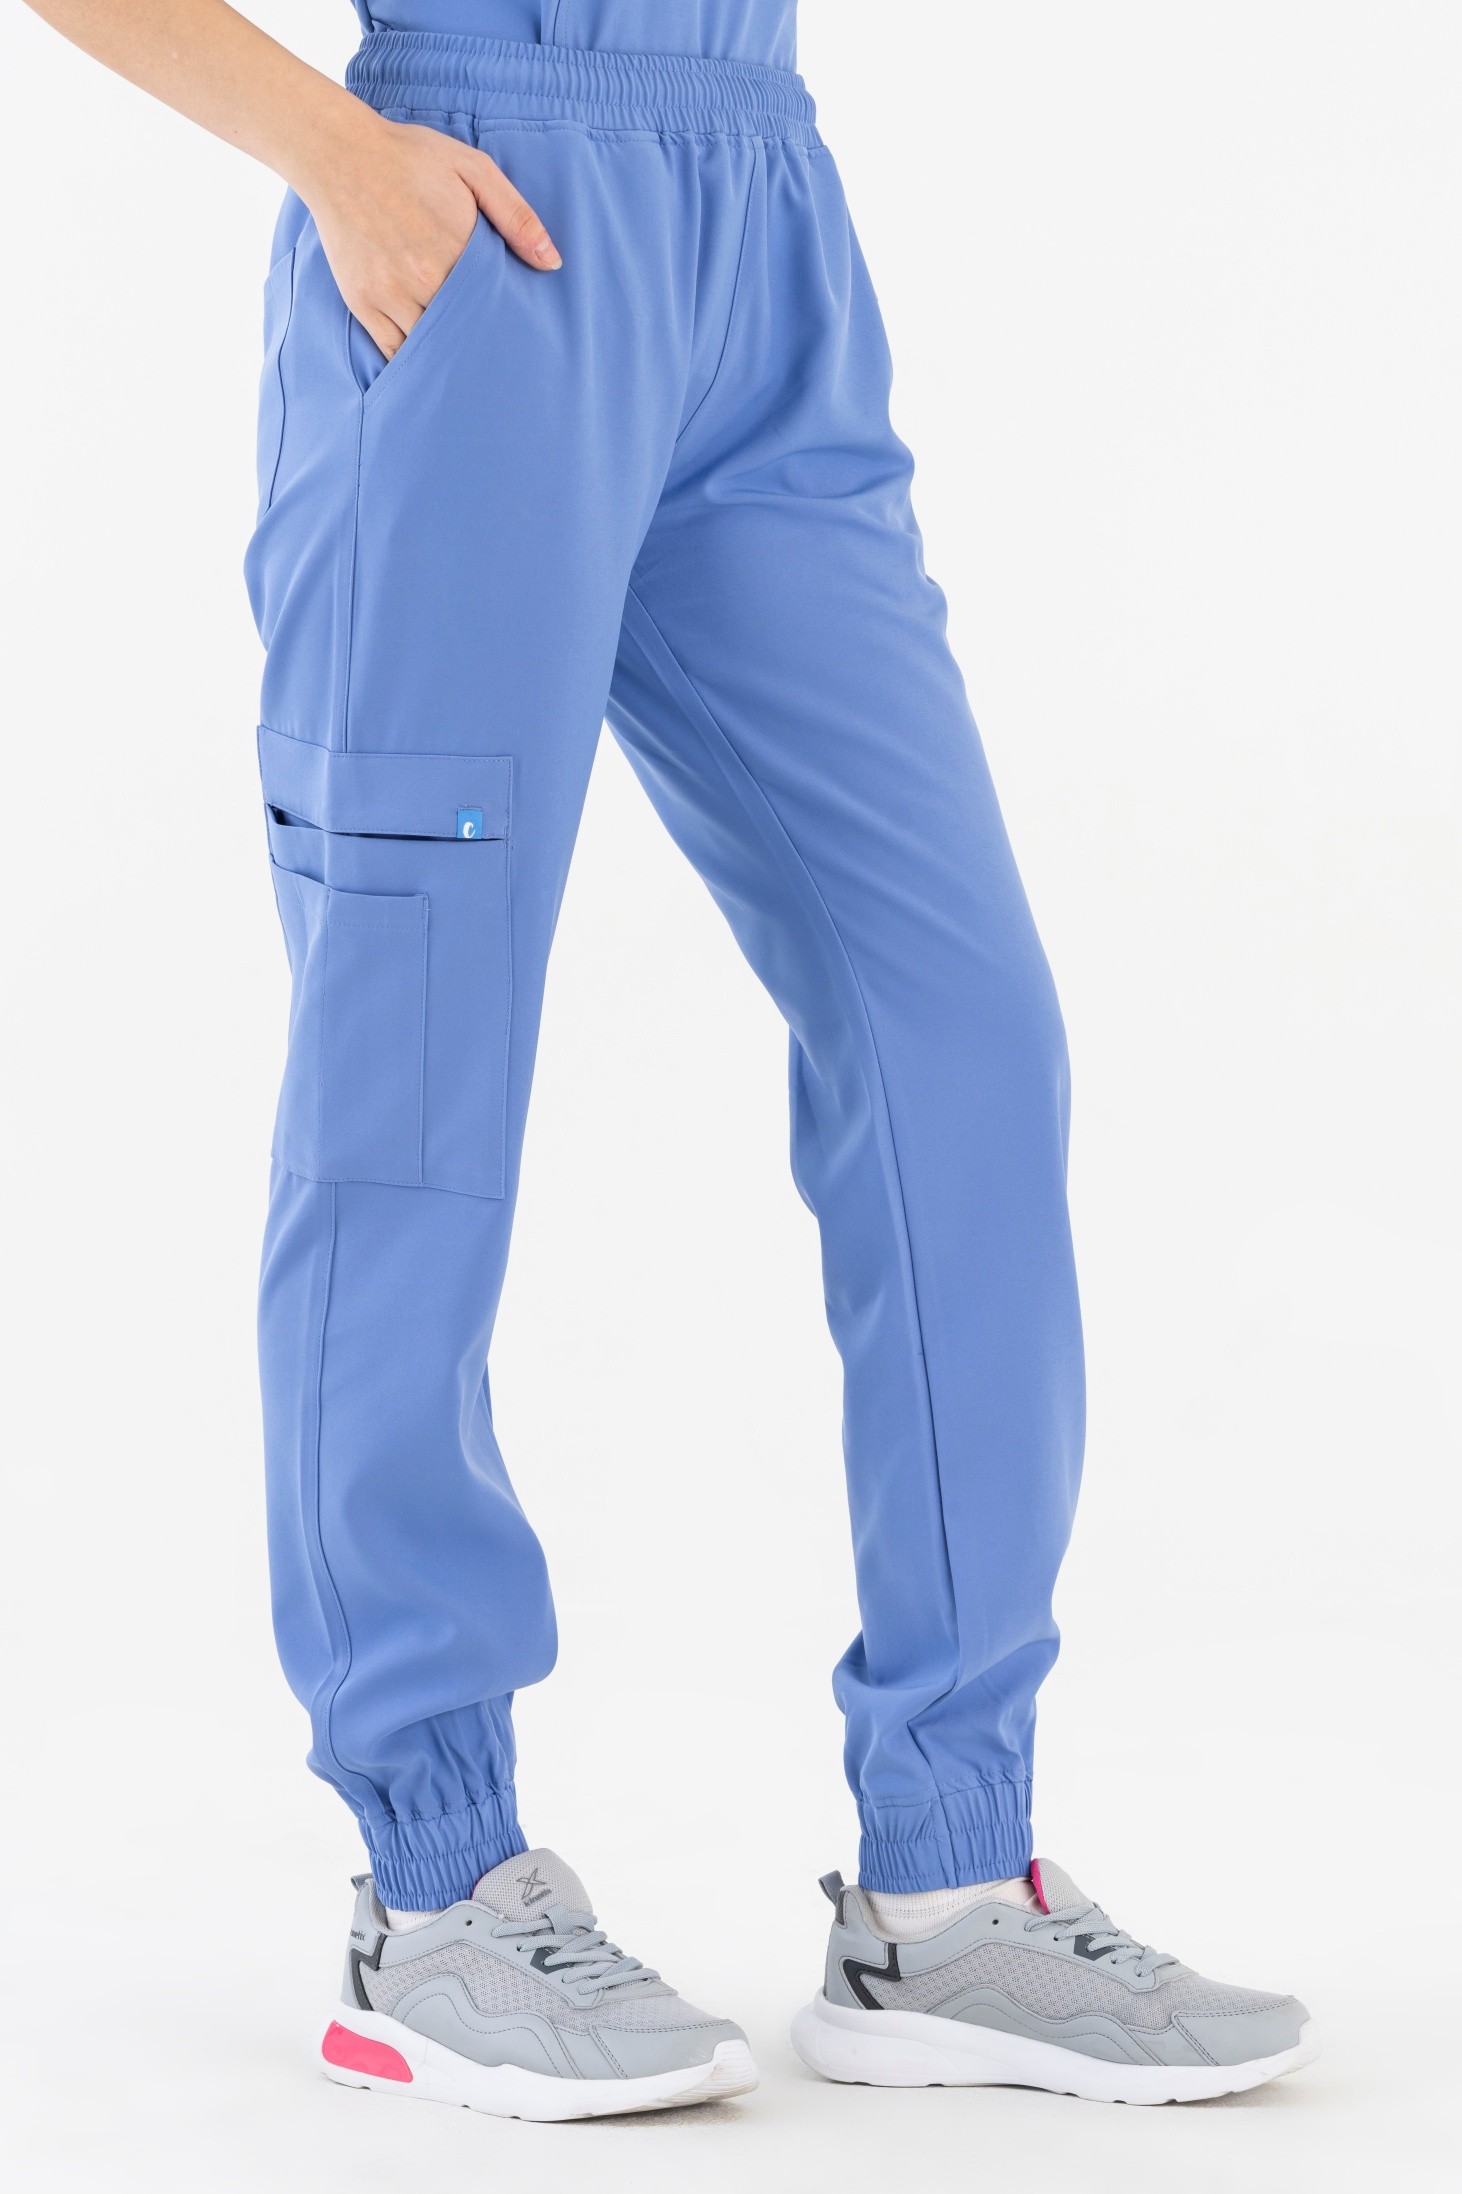 Sierra Kadın Kargo Jogger Pantolon - Açık Mavi